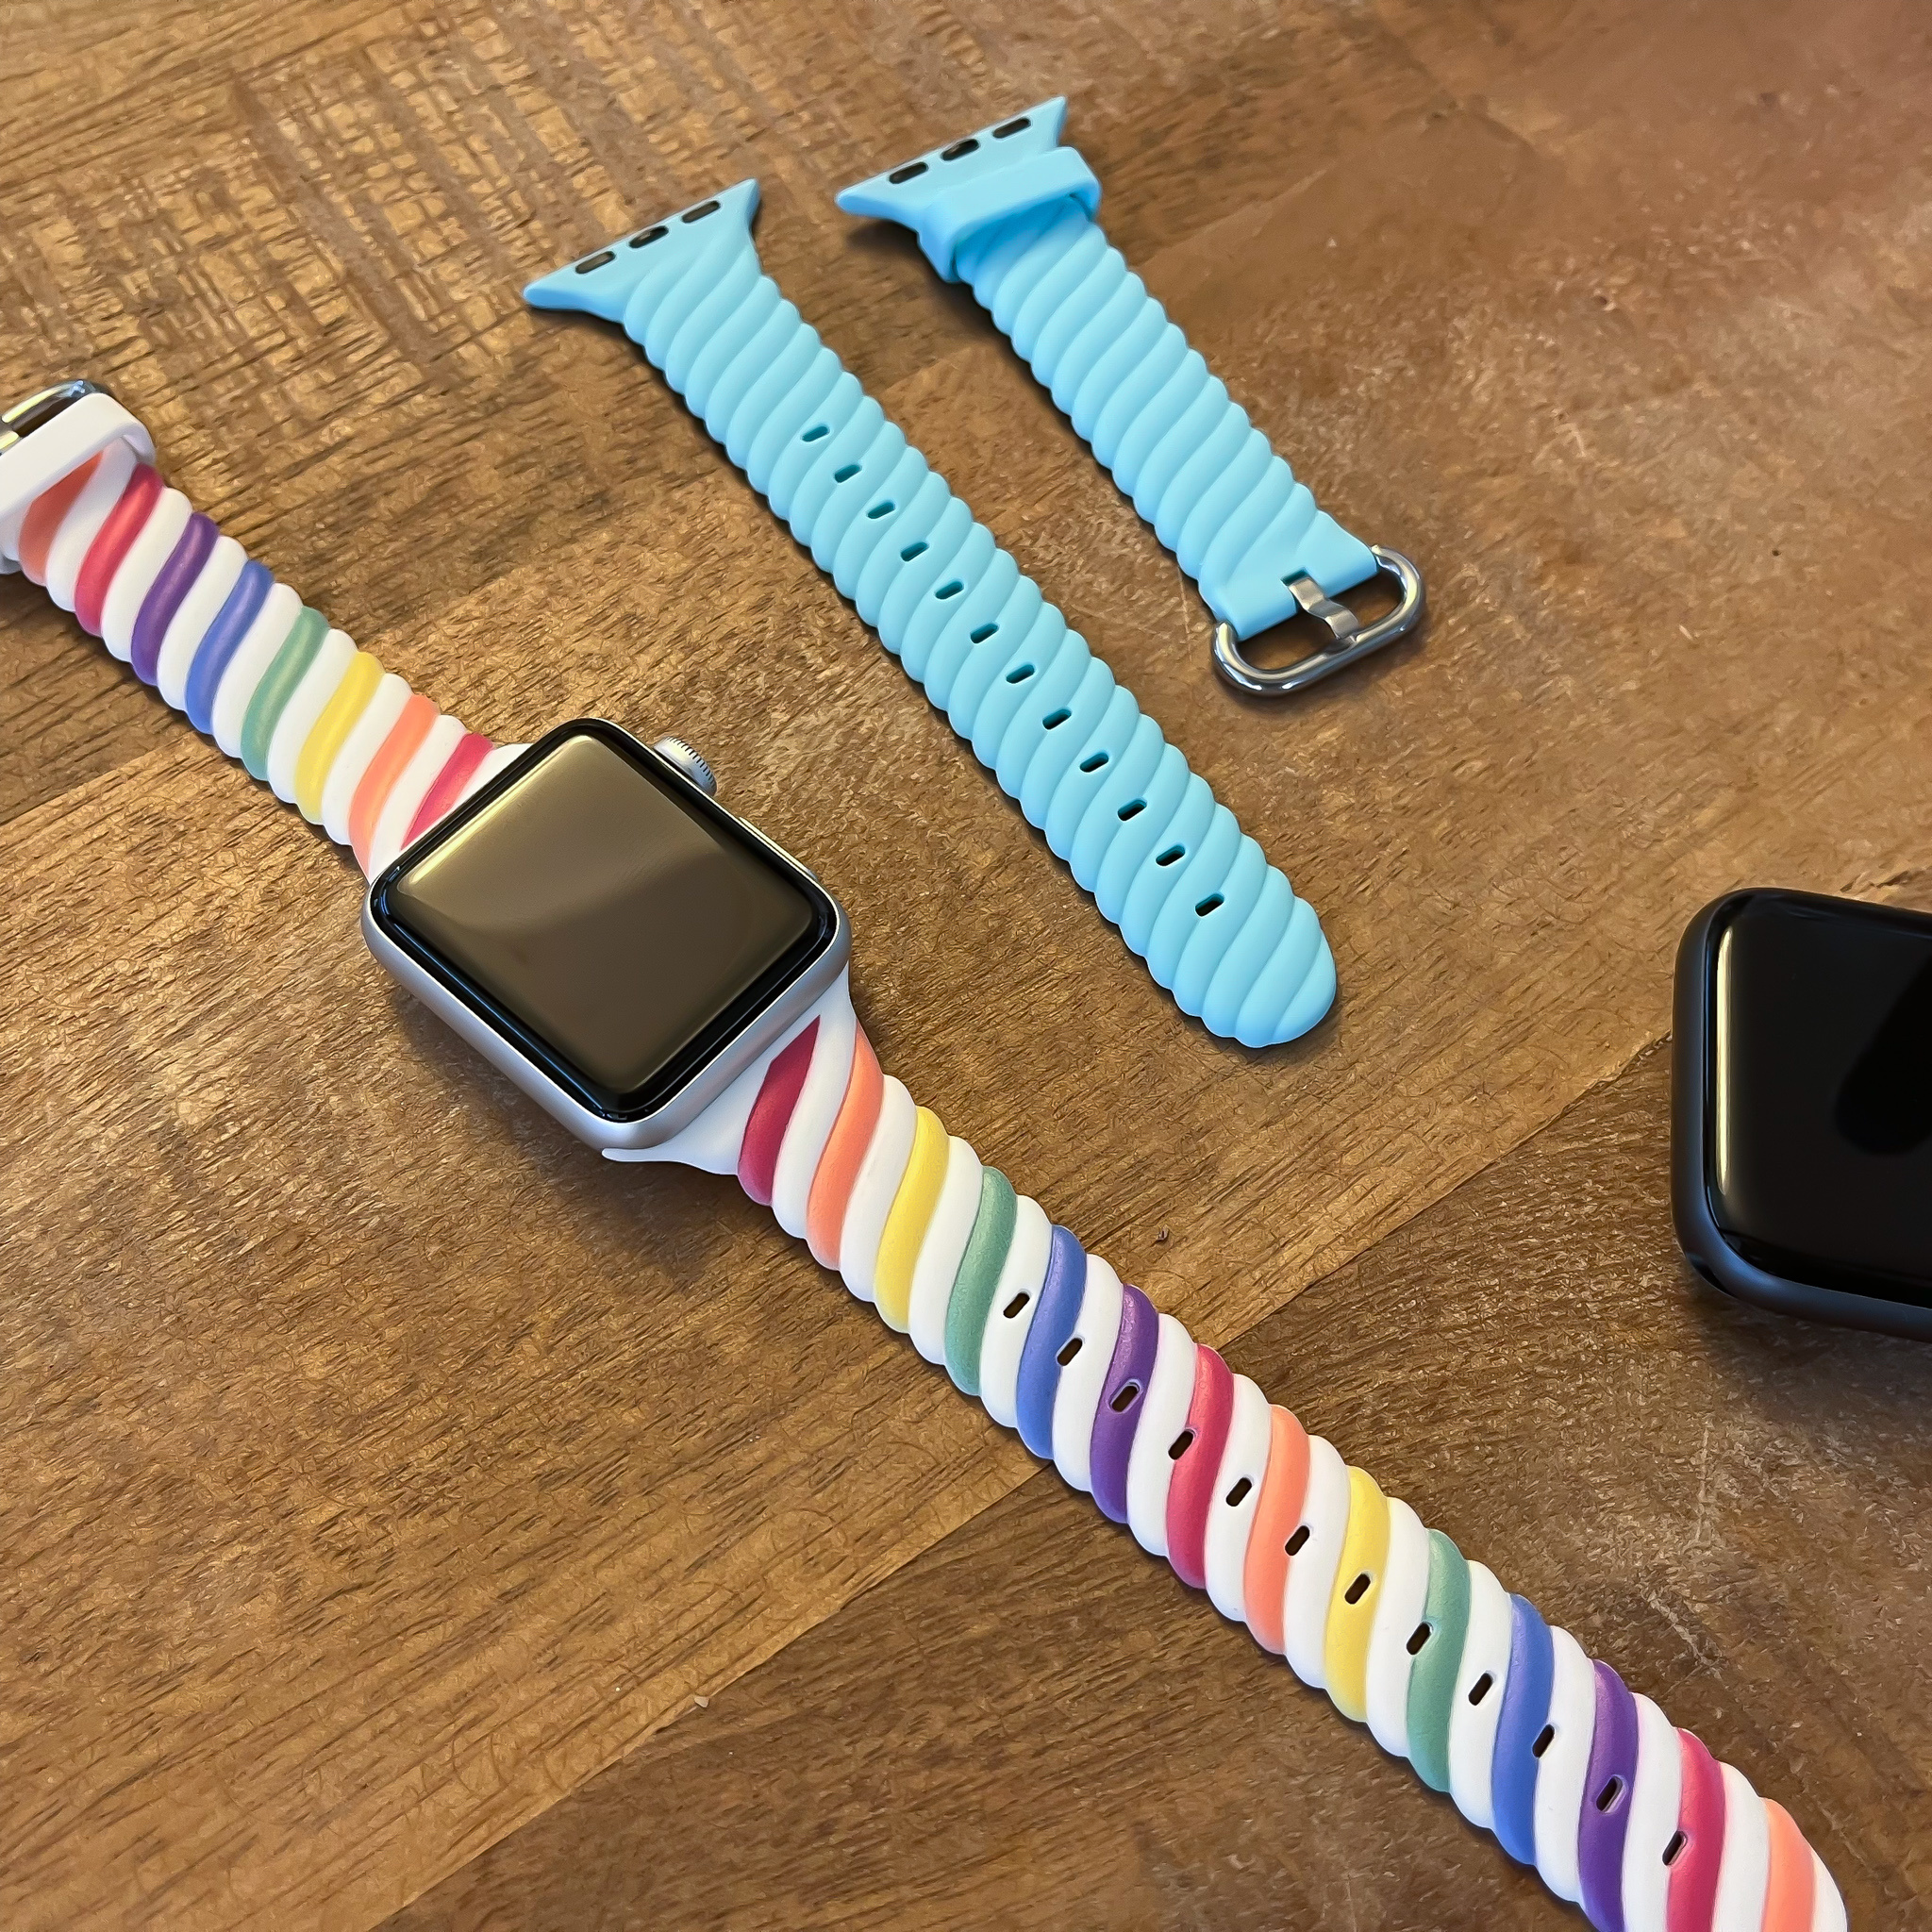 Cinturino sport swirl per Apple Watch - bianco colorato